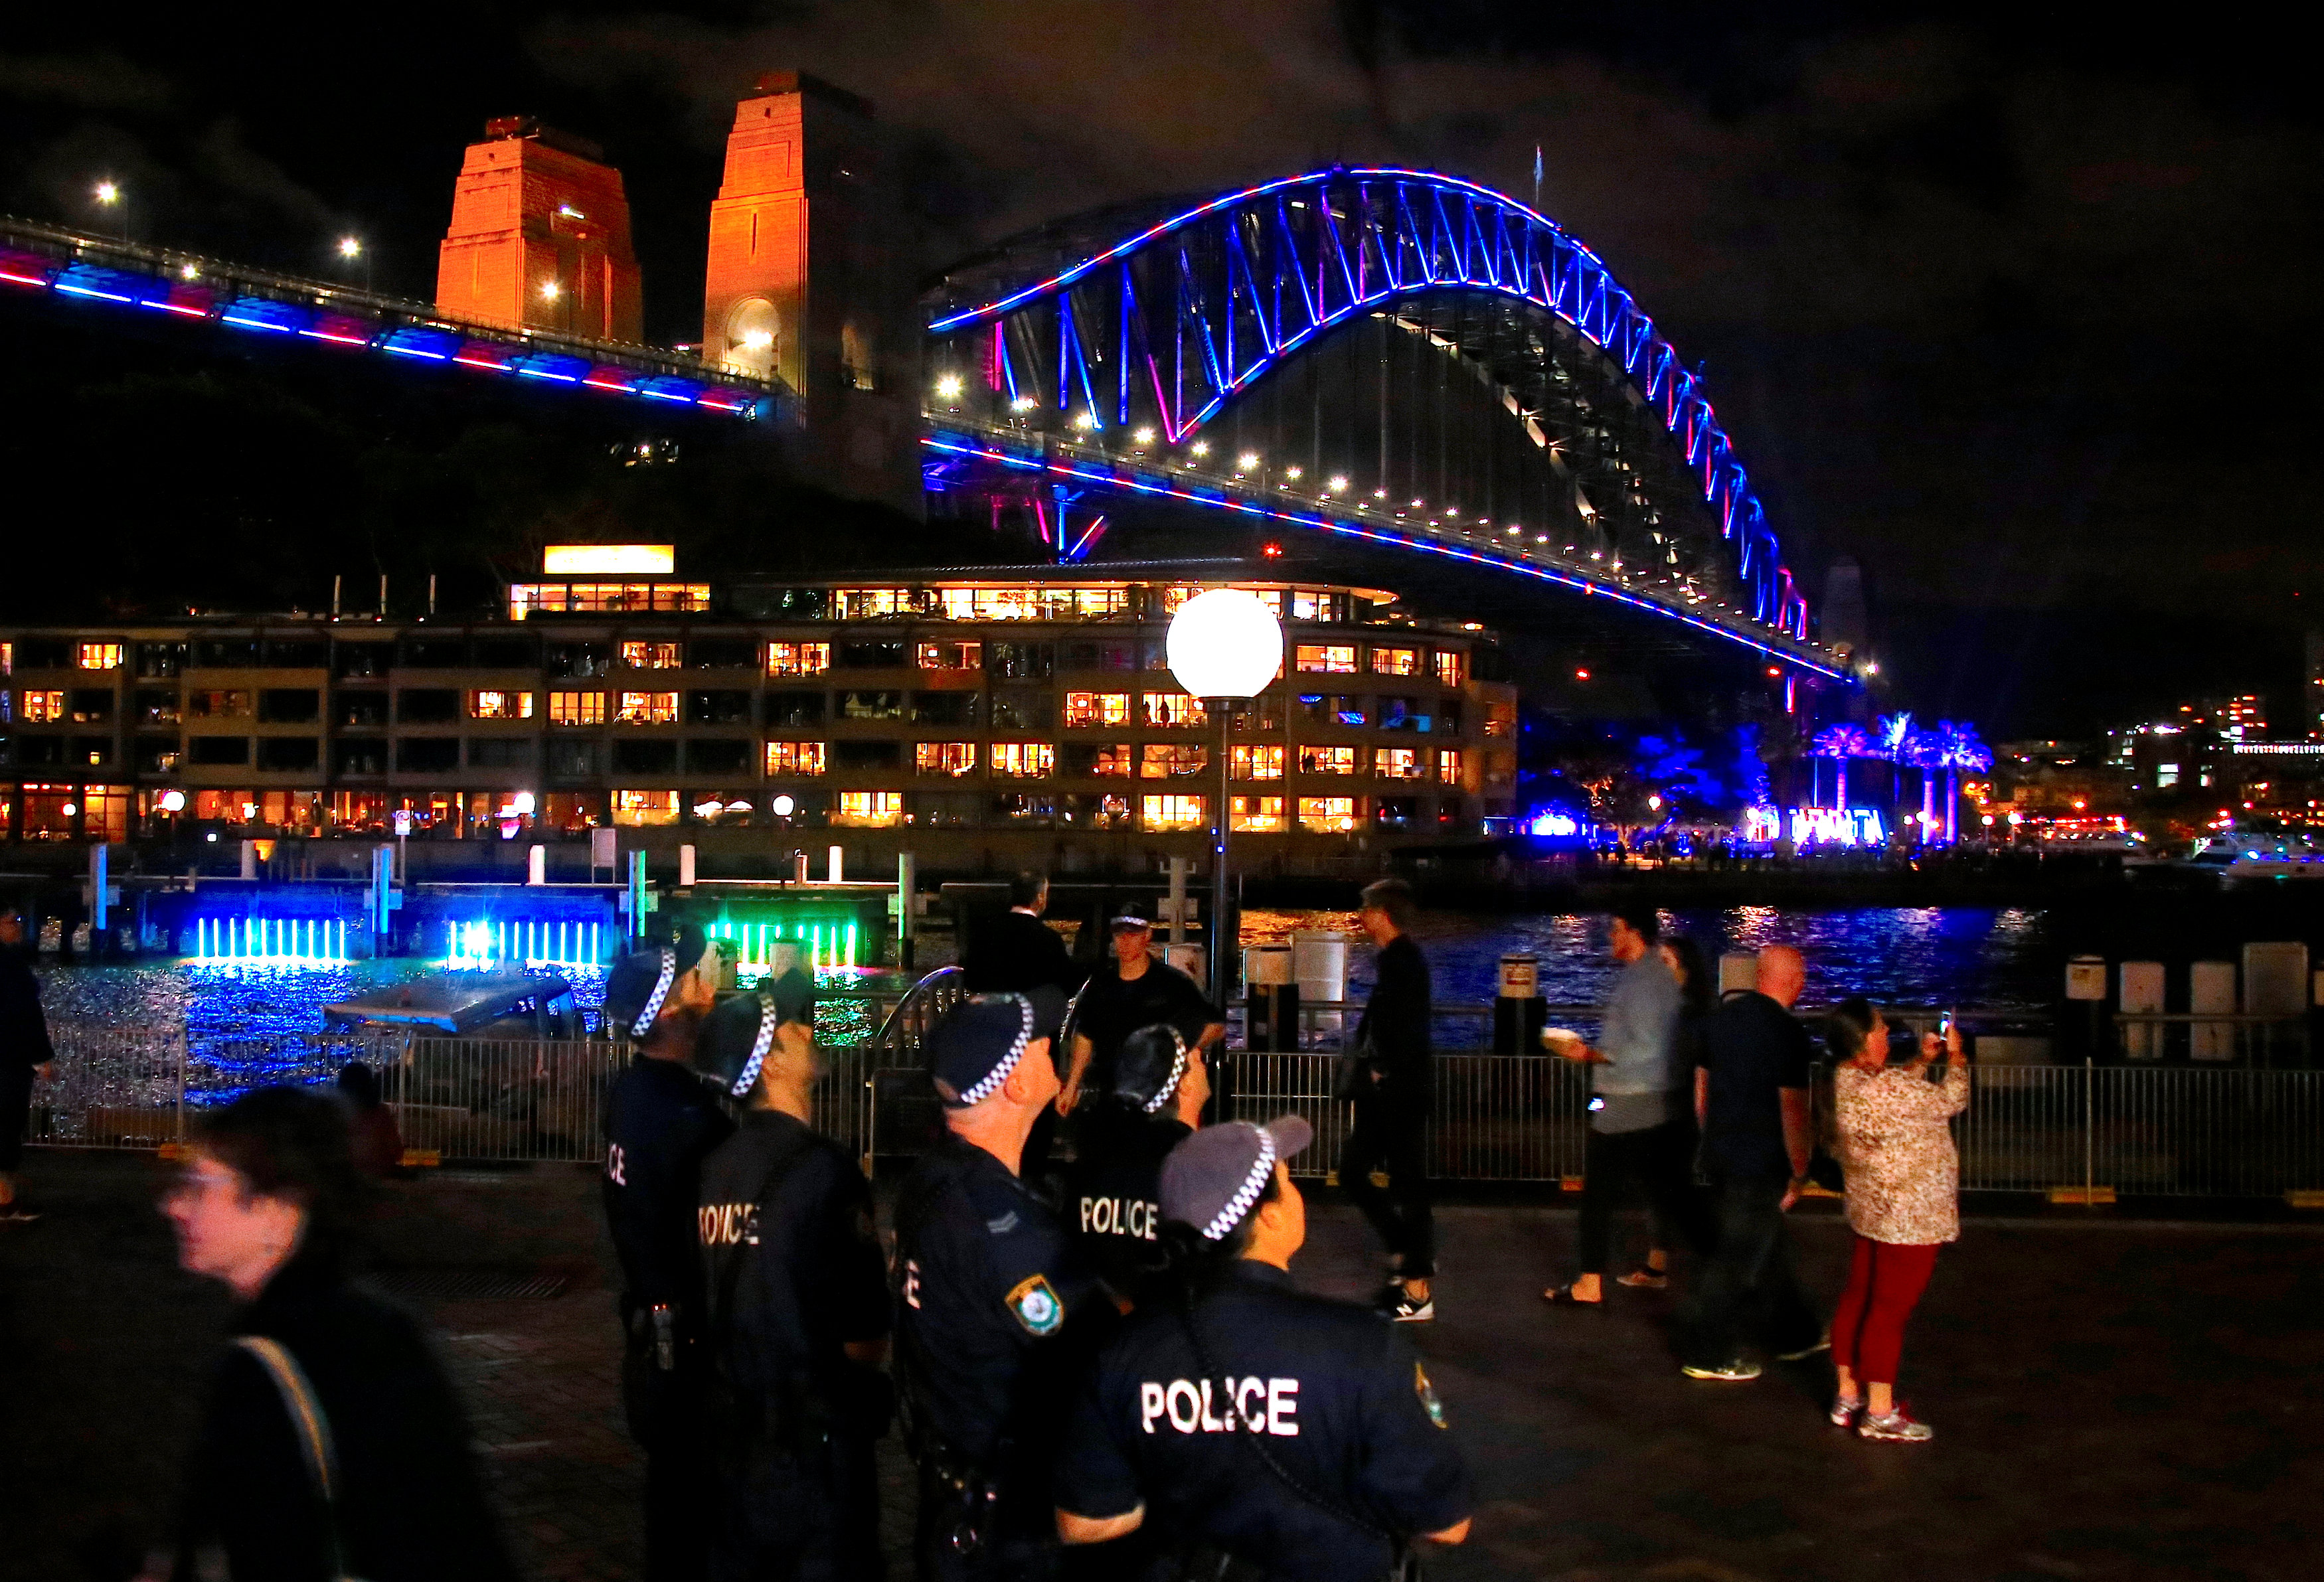 الشرطة الأسترالية تؤمن المحتفلون بمهرجان سيدنى